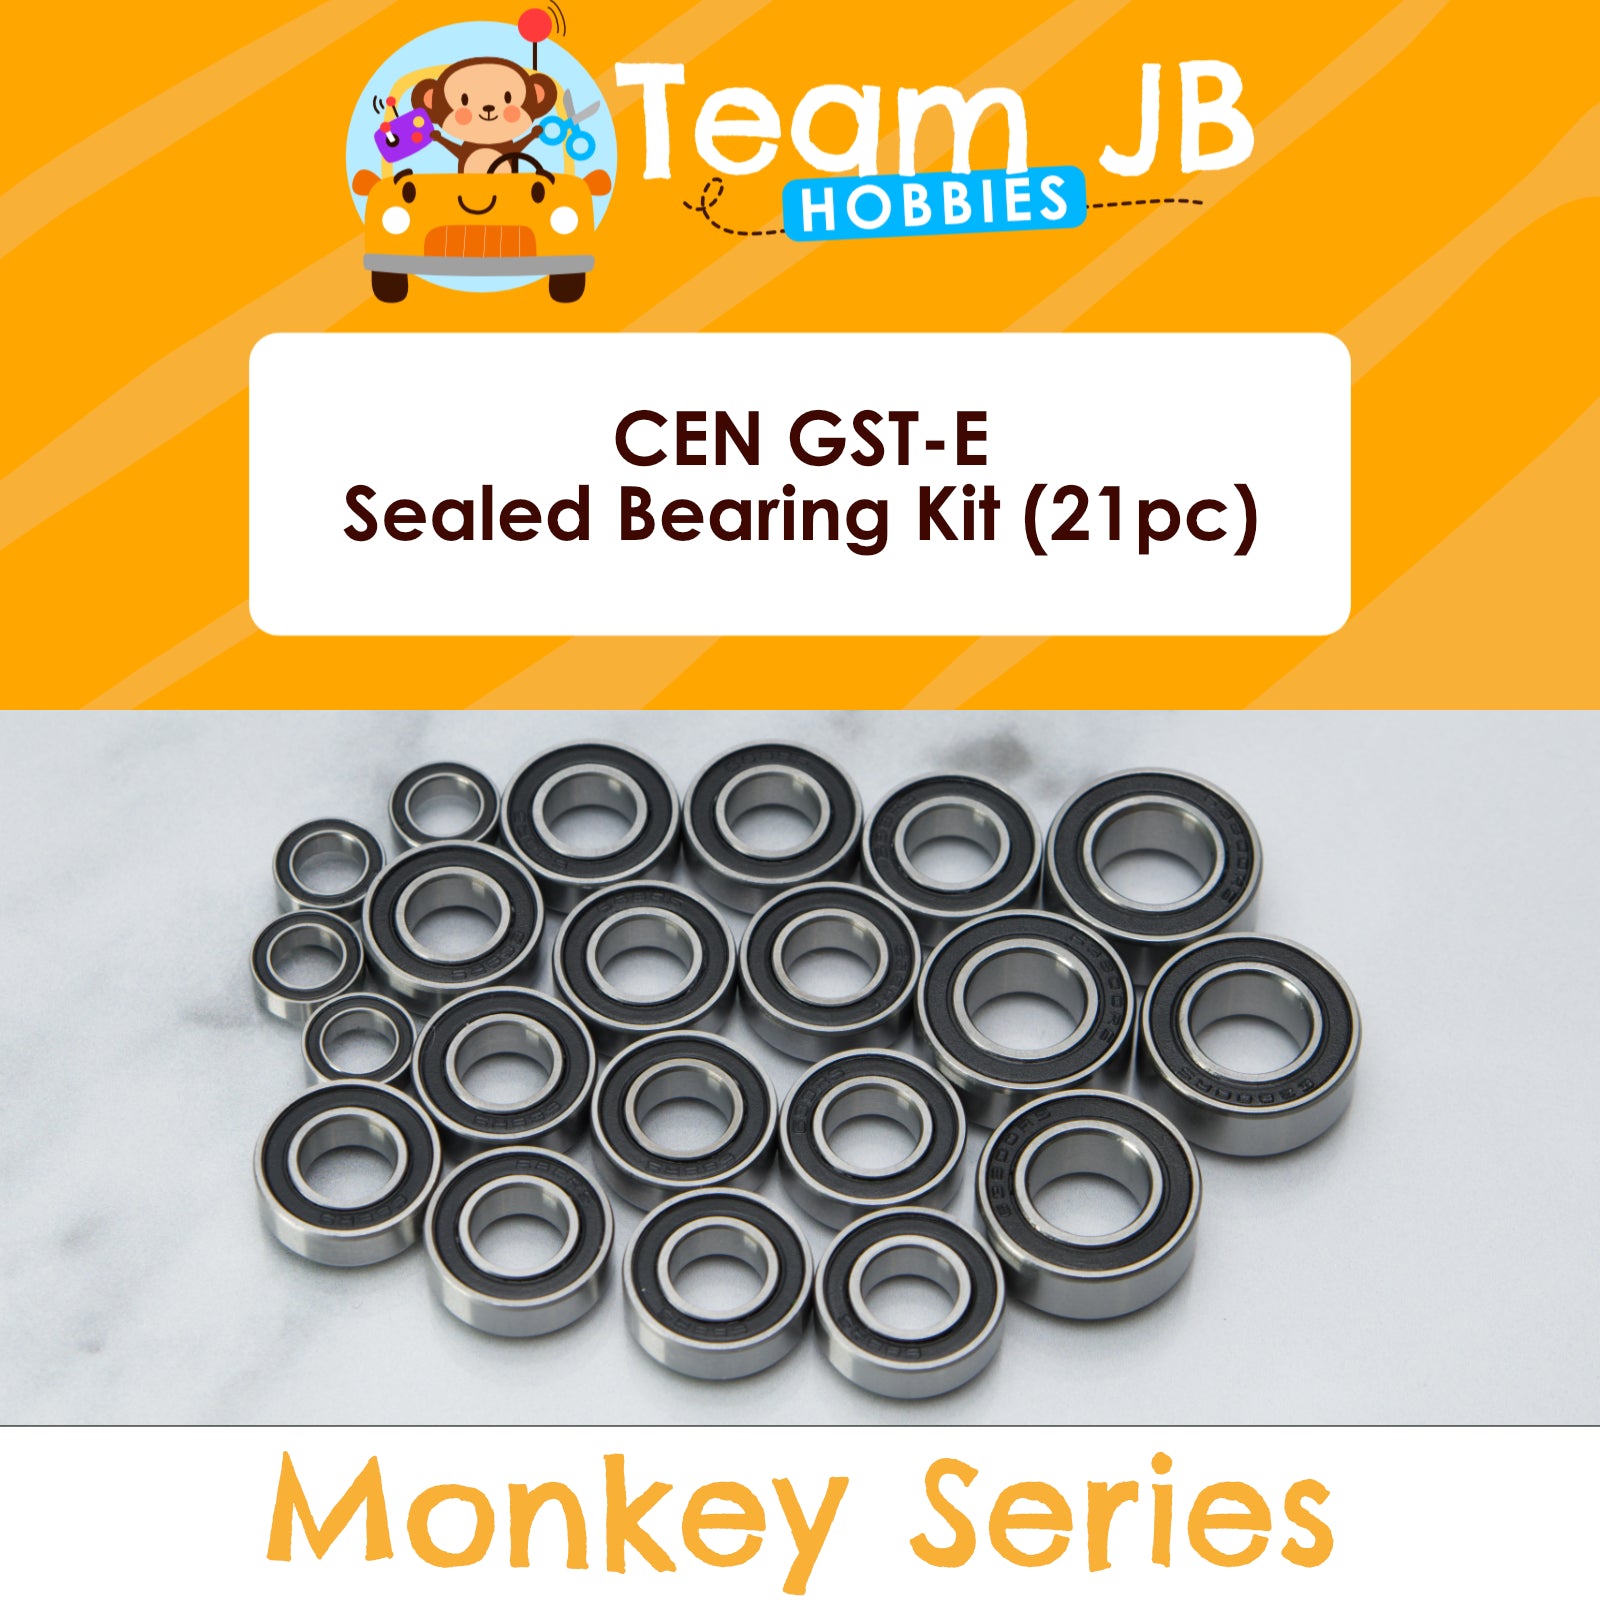 CEN GST-E - Sealed Bearing Kit